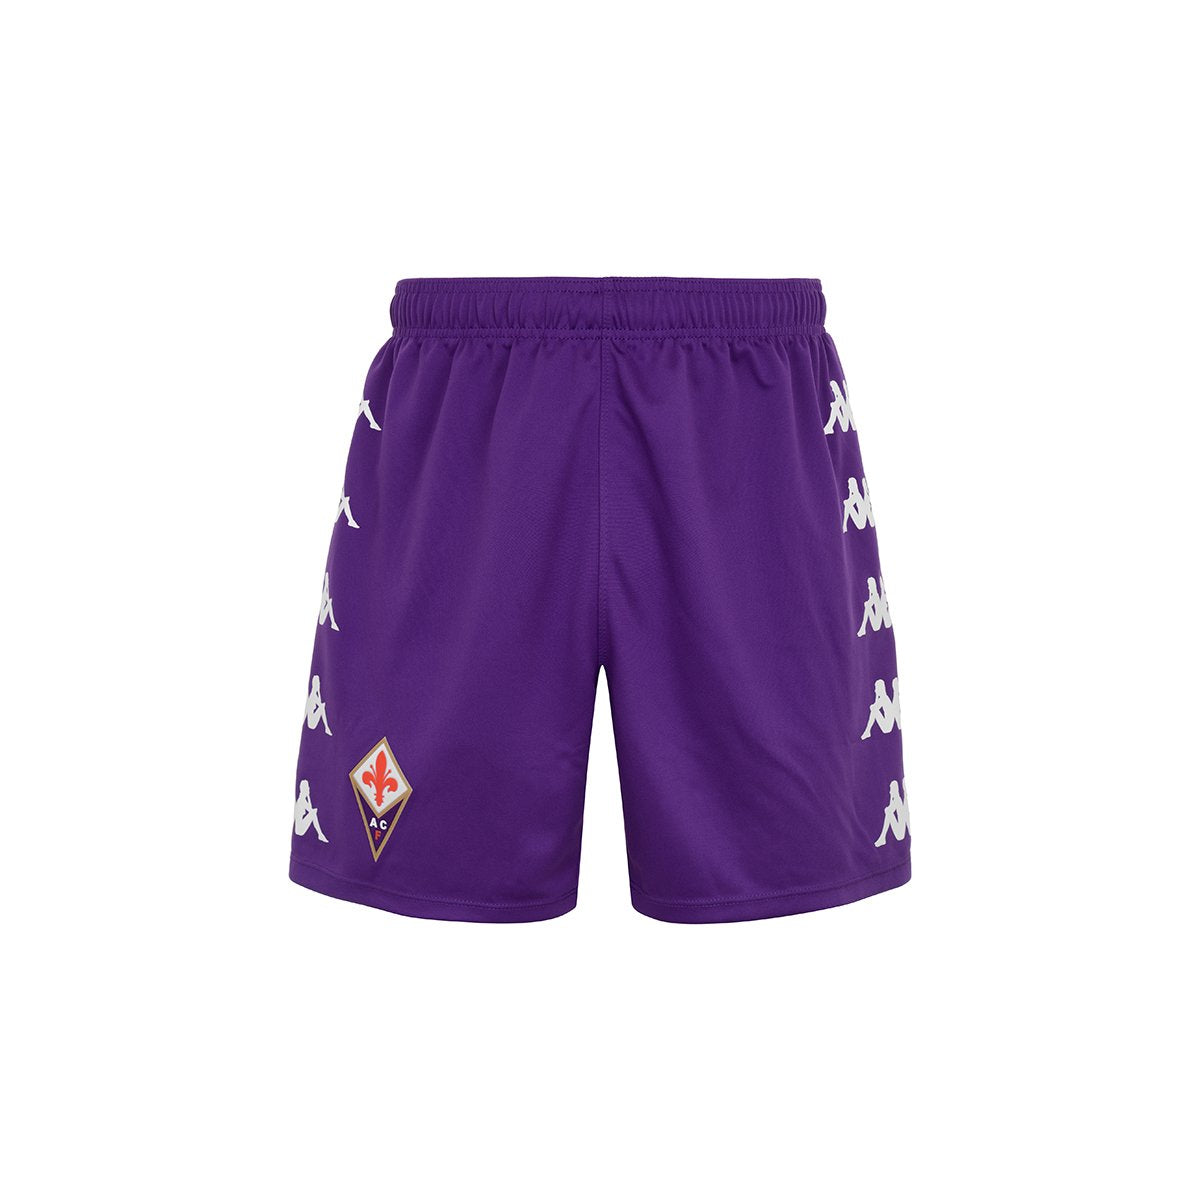 Short Kombat Ryder Pro Fiorentina Púrpura Hombre - Imagen 1